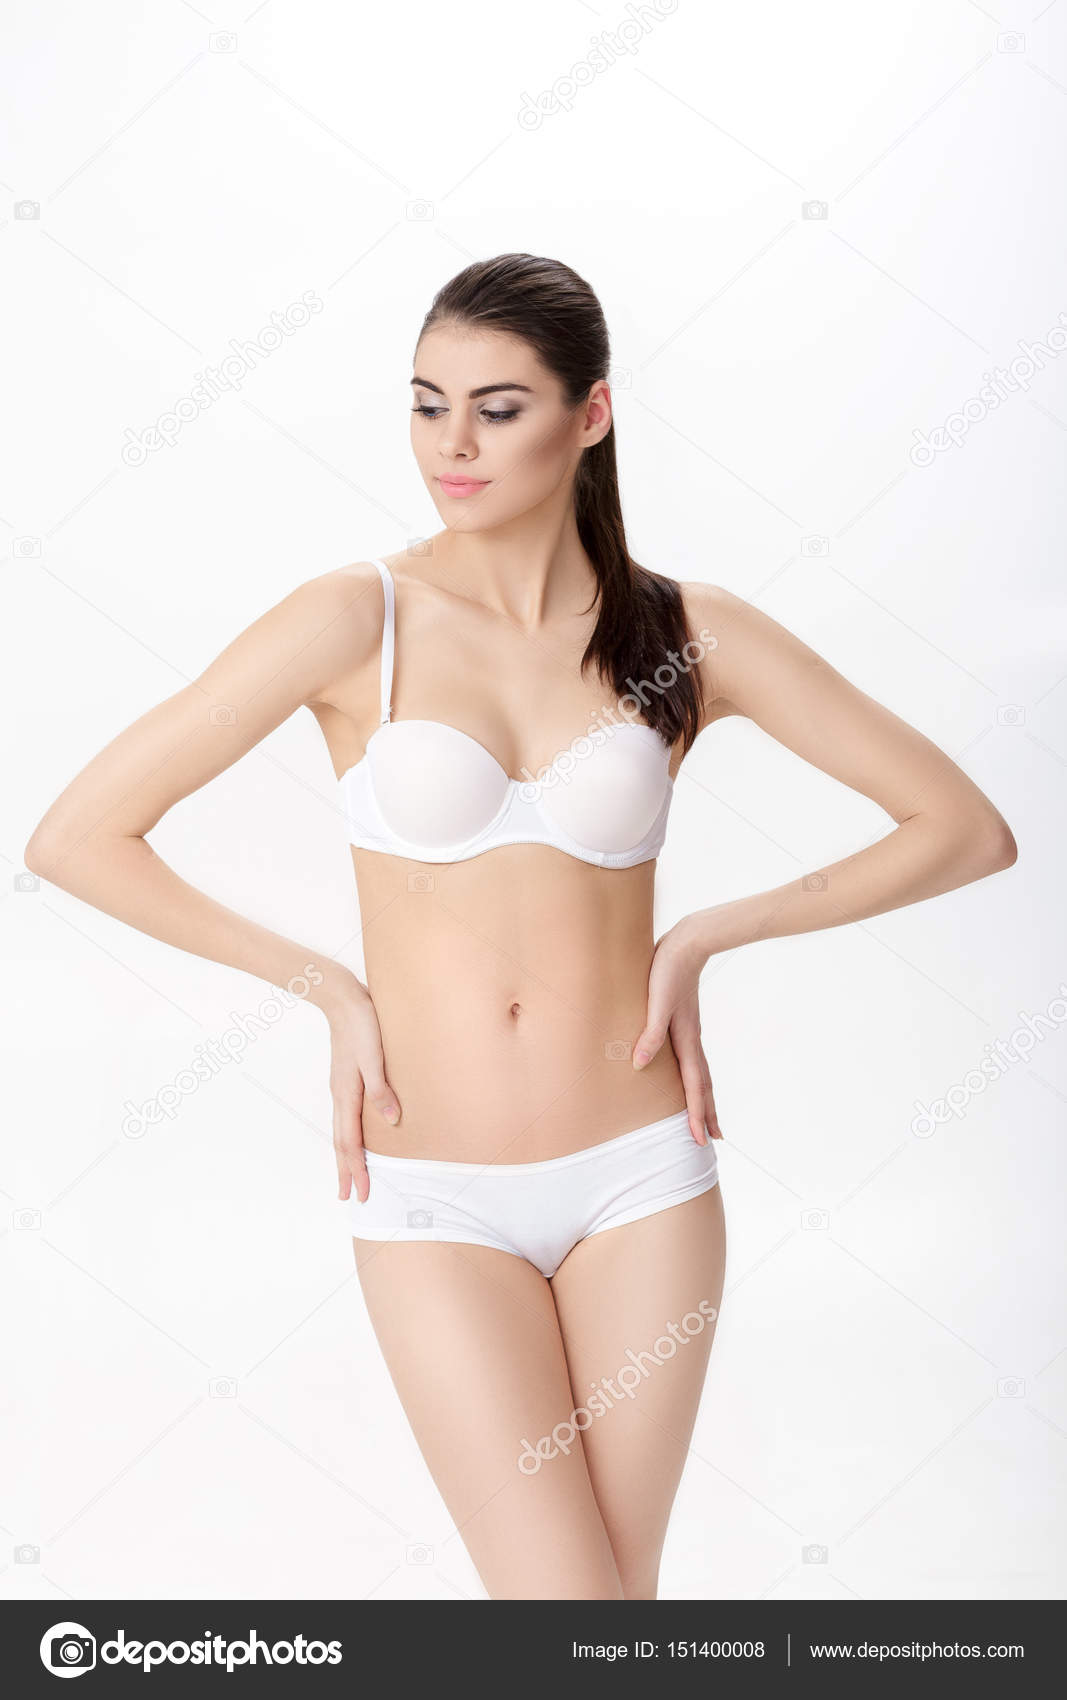 Premium Photo  Pretty petite brunette woman in a small black sports bra on  a white background